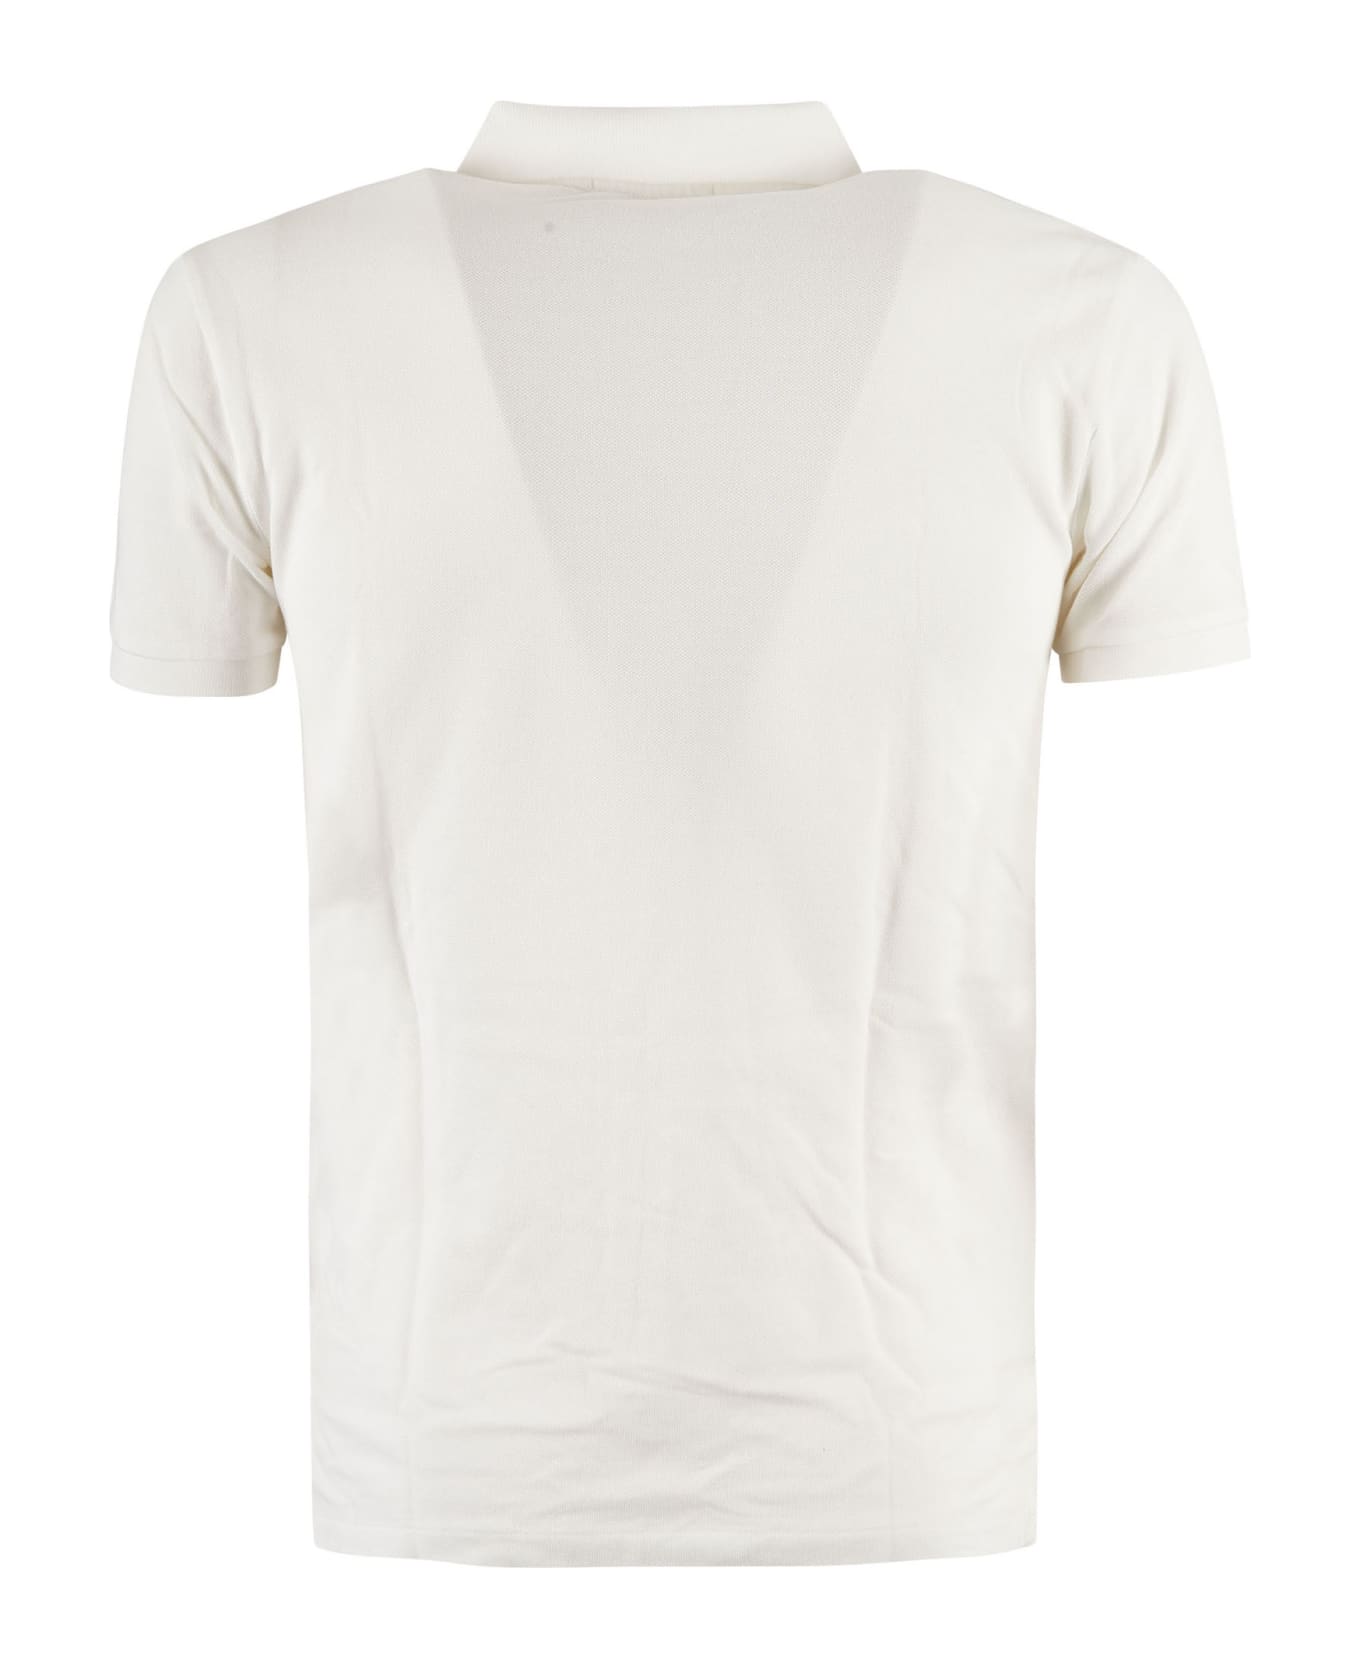 Ralph Lauren Long-sleeved Polo Shirt - White